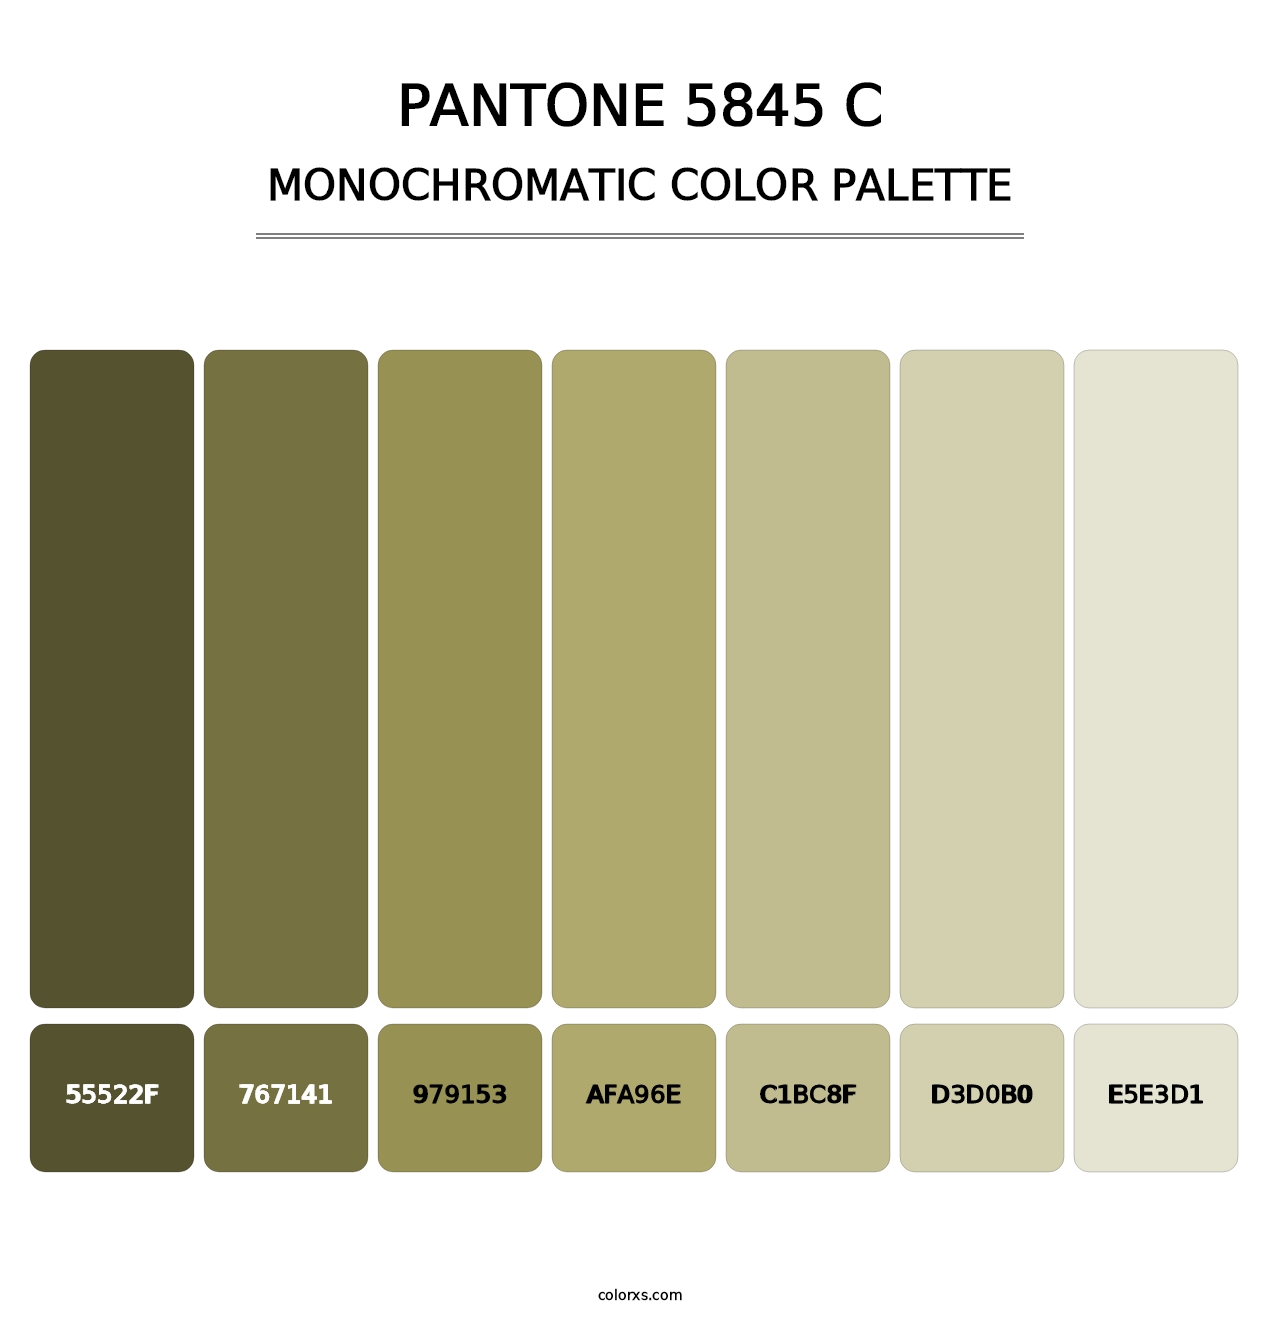 PANTONE 5845 C - Monochromatic Color Palette